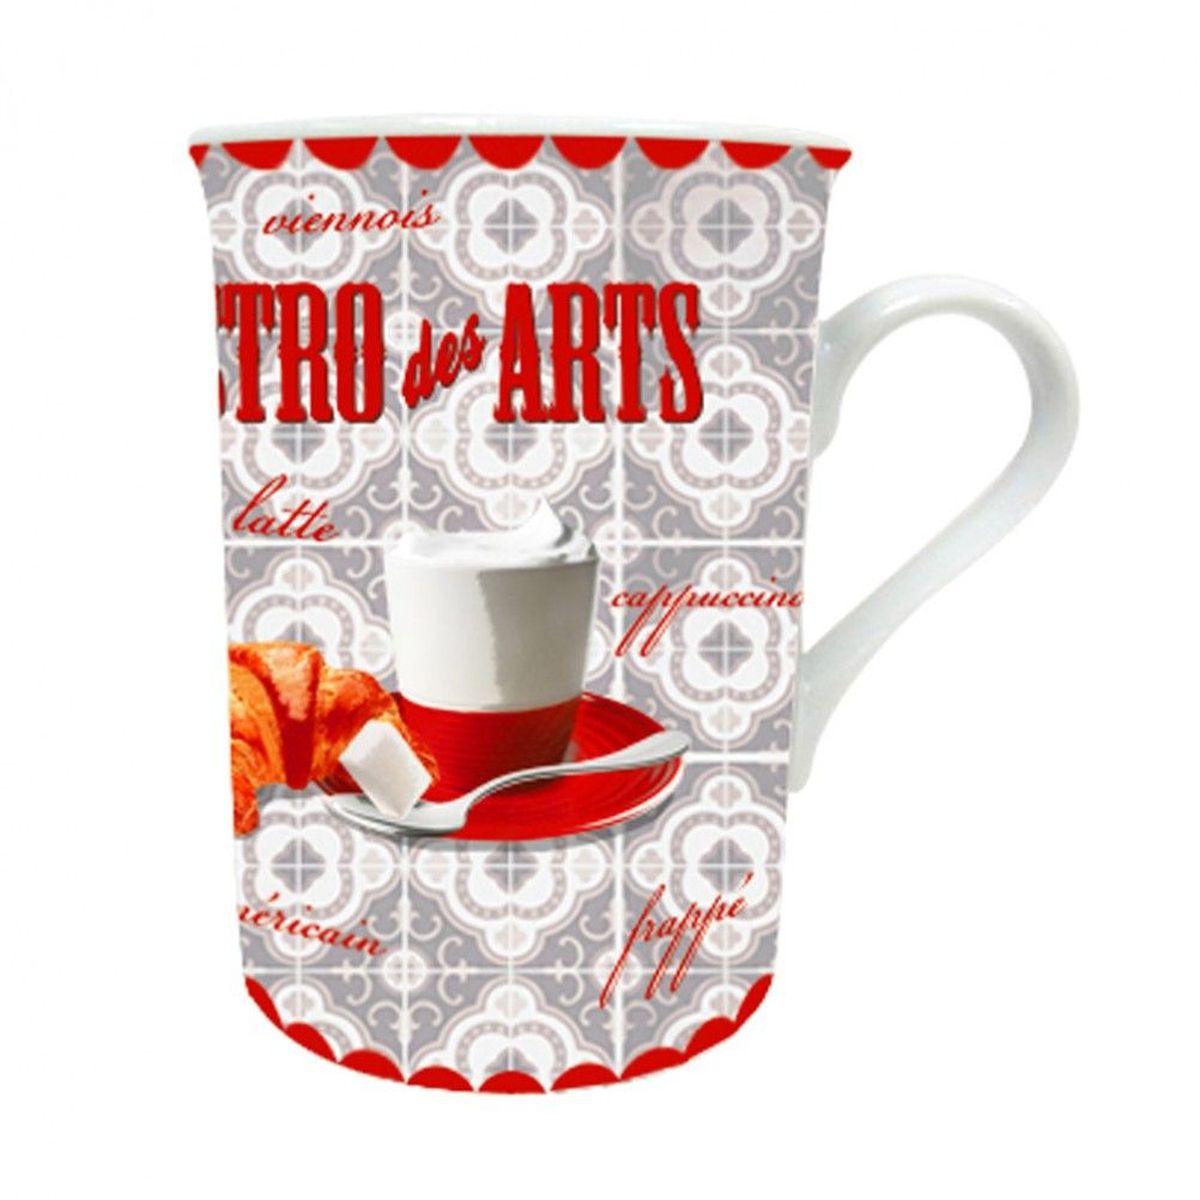 Mug Bistro des Arts - Caf Croissant